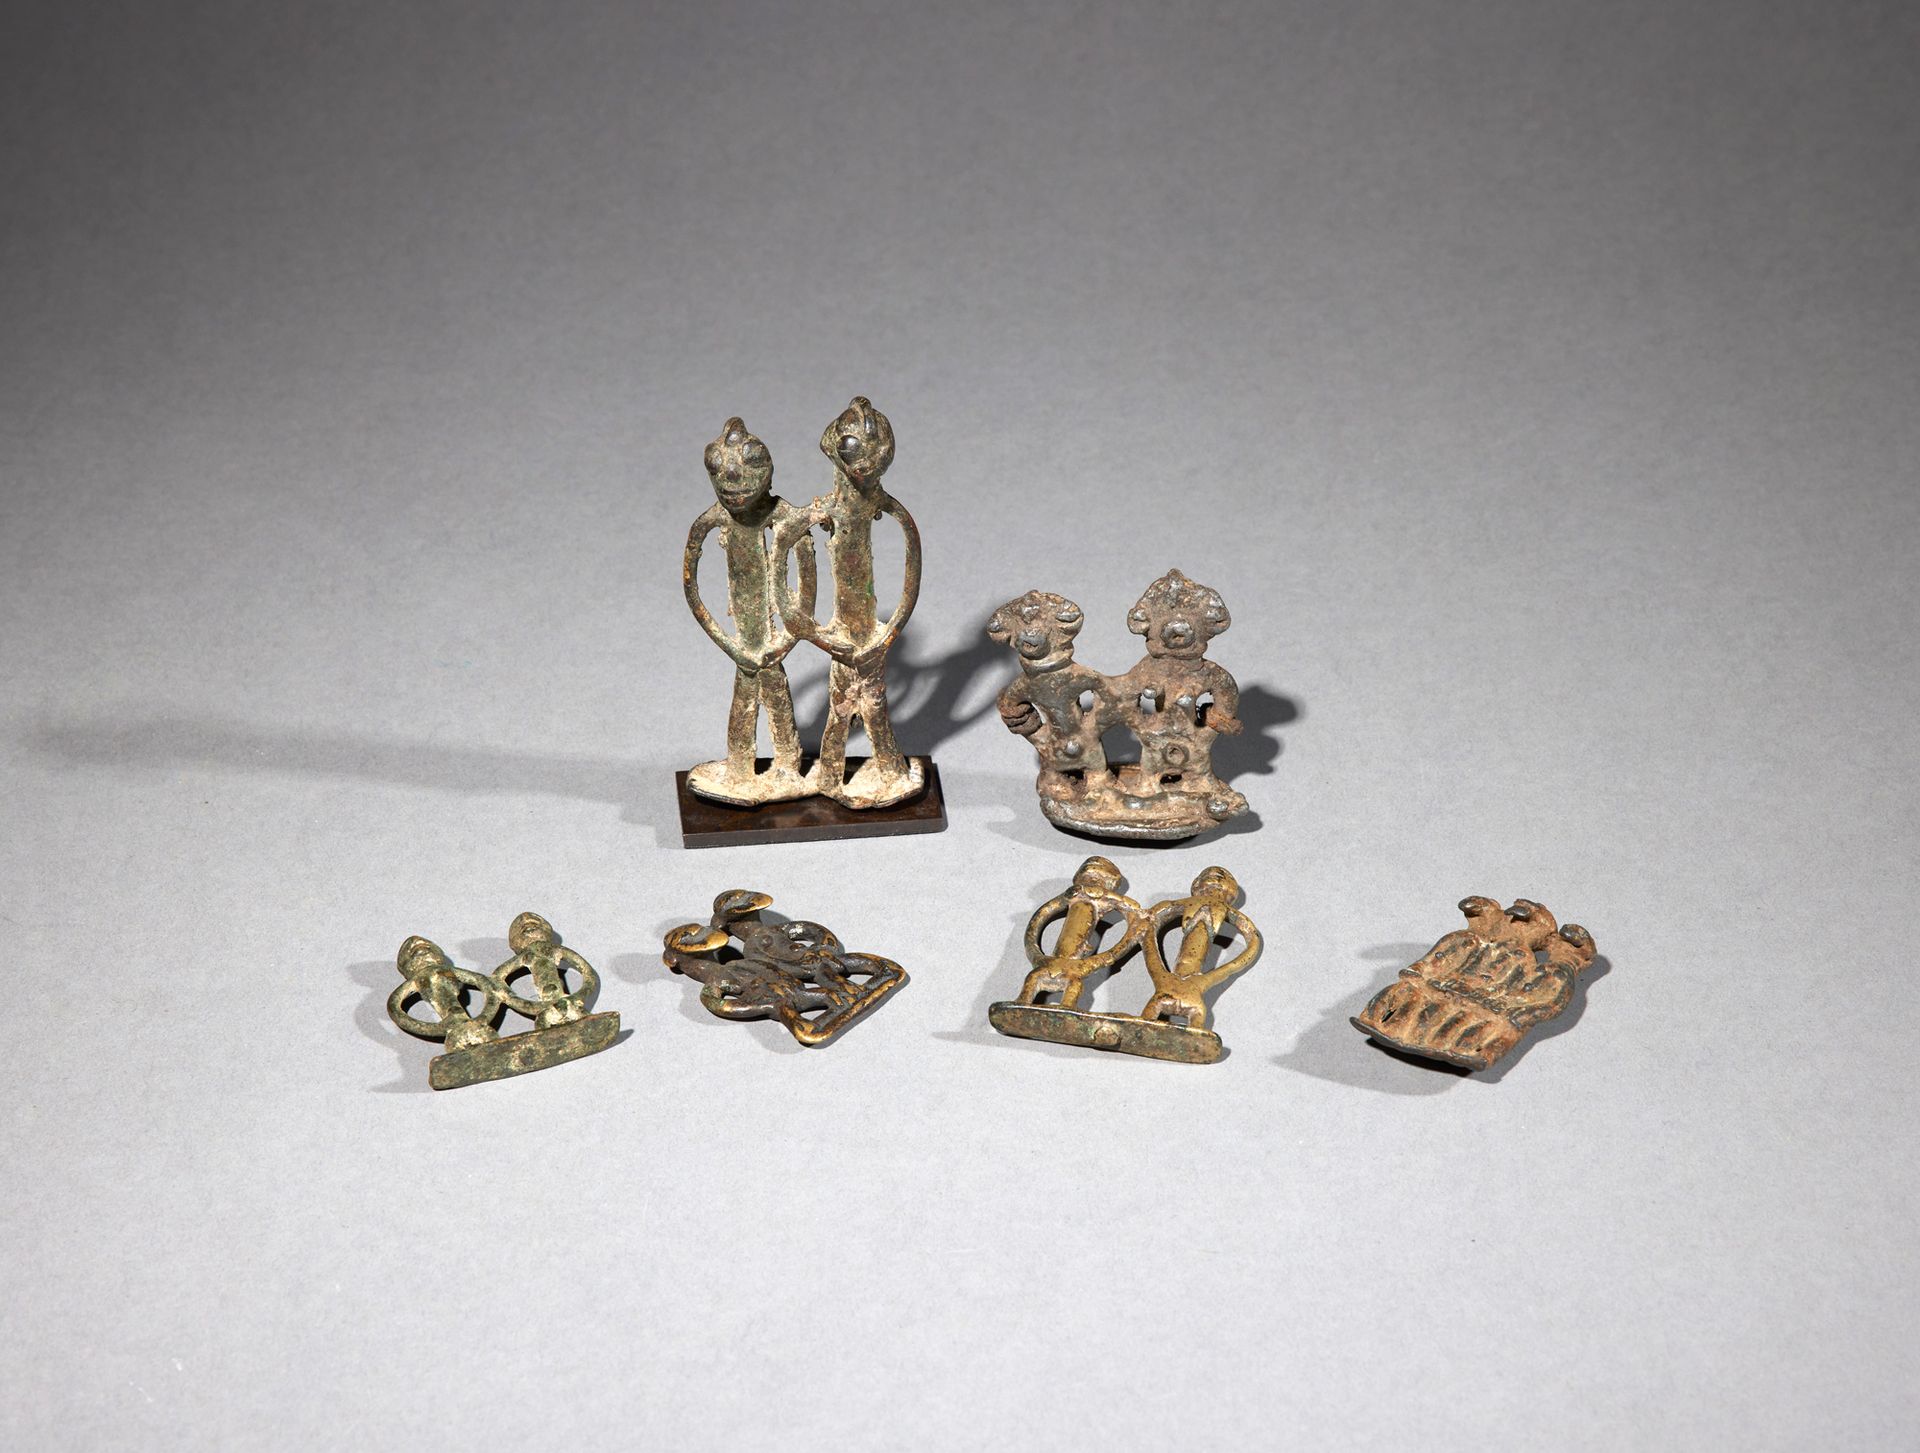 Null 六个护身符

象牙海岸/布基那法索

铜质

H.4.2至8.8厘米



一套六件青铜拟人护身符，代表不同的群体，其中一些是塞努福。